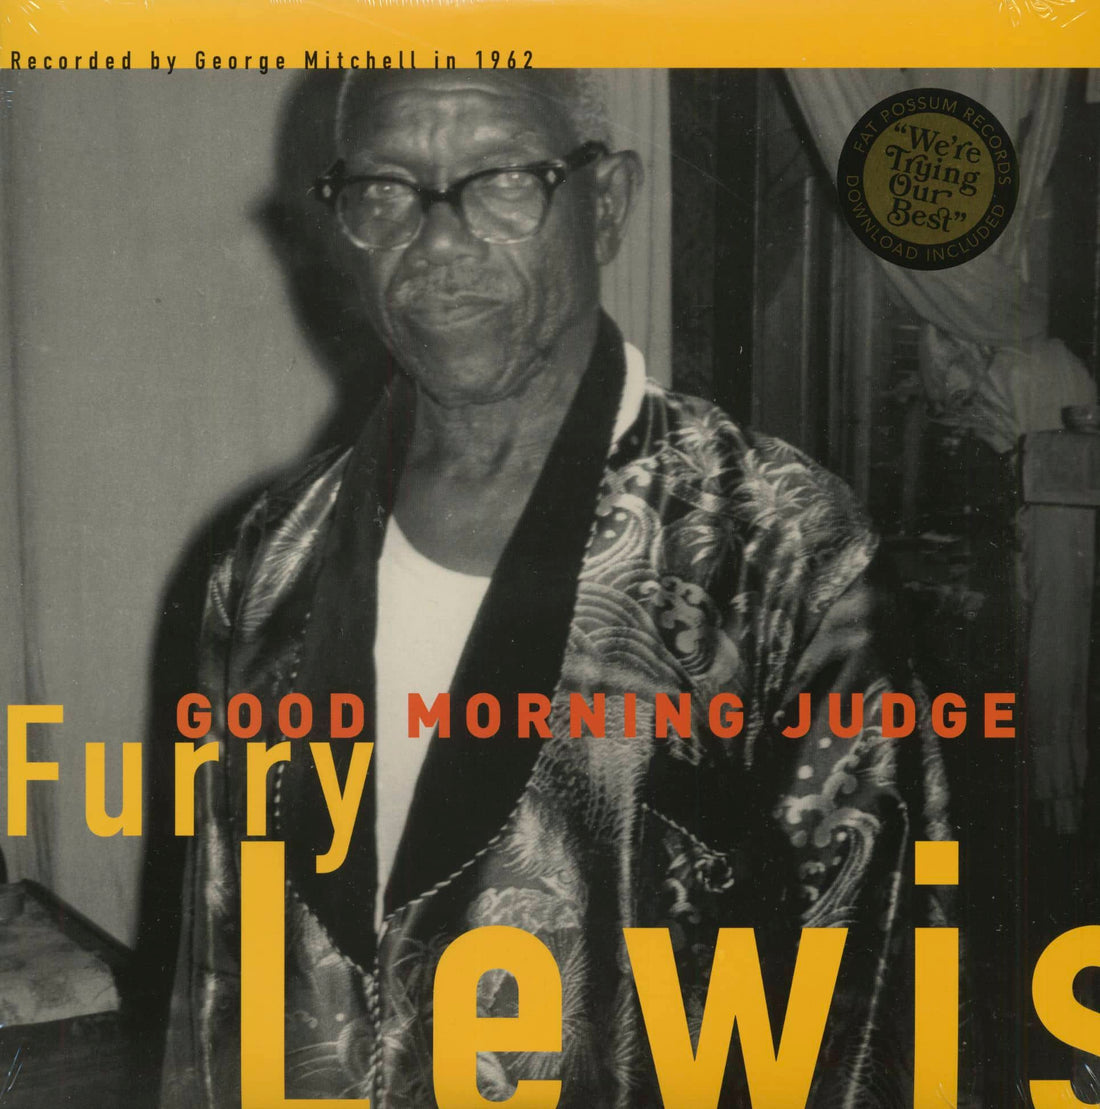 Furry Lewis- Good Morning Judge